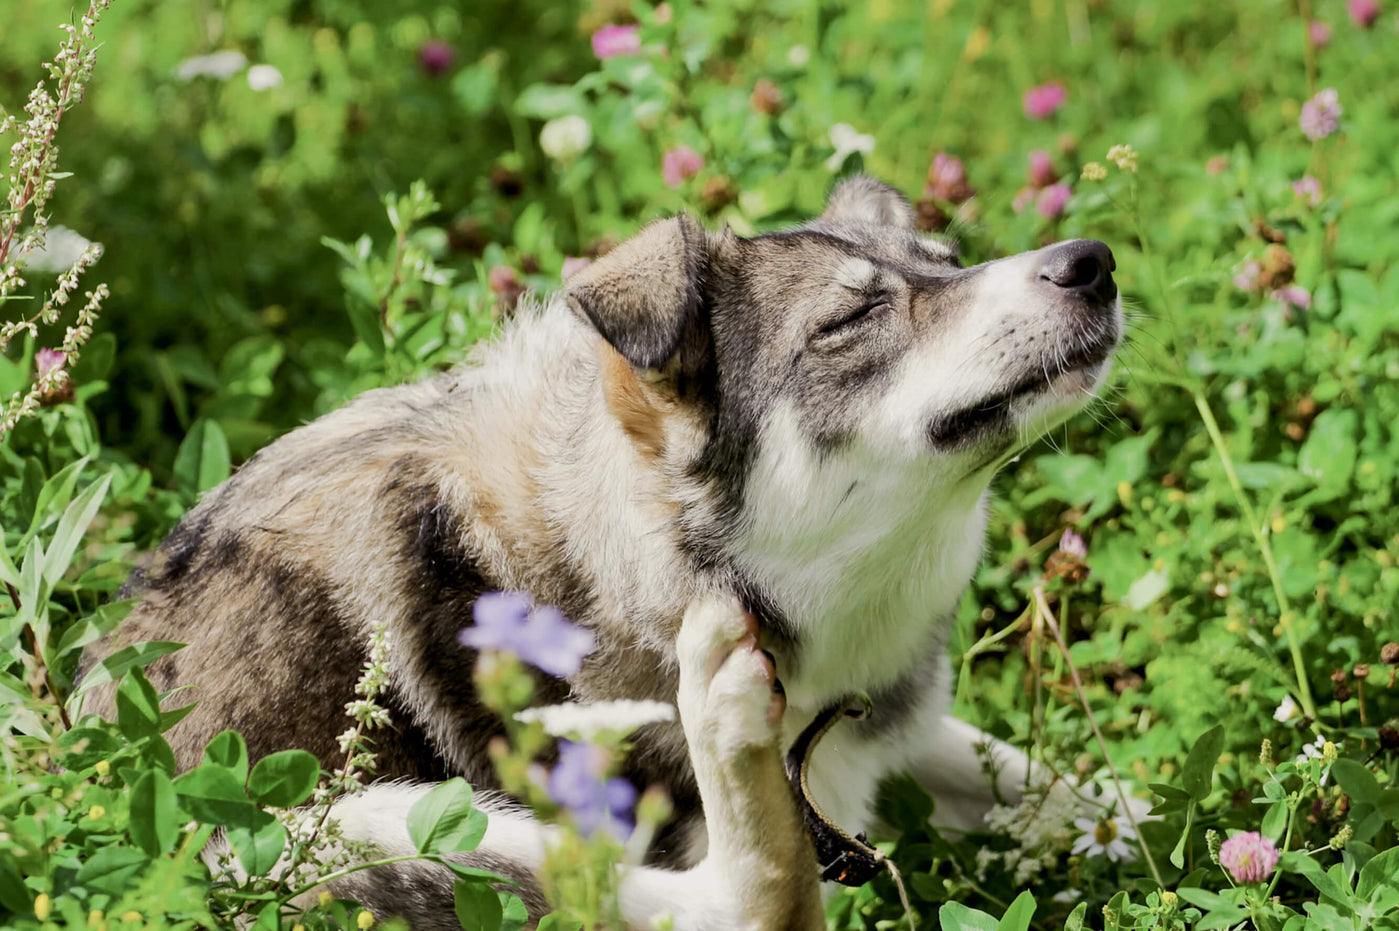 Flöhe bei Hunden: Erkennen, behandeln und vorbeugen